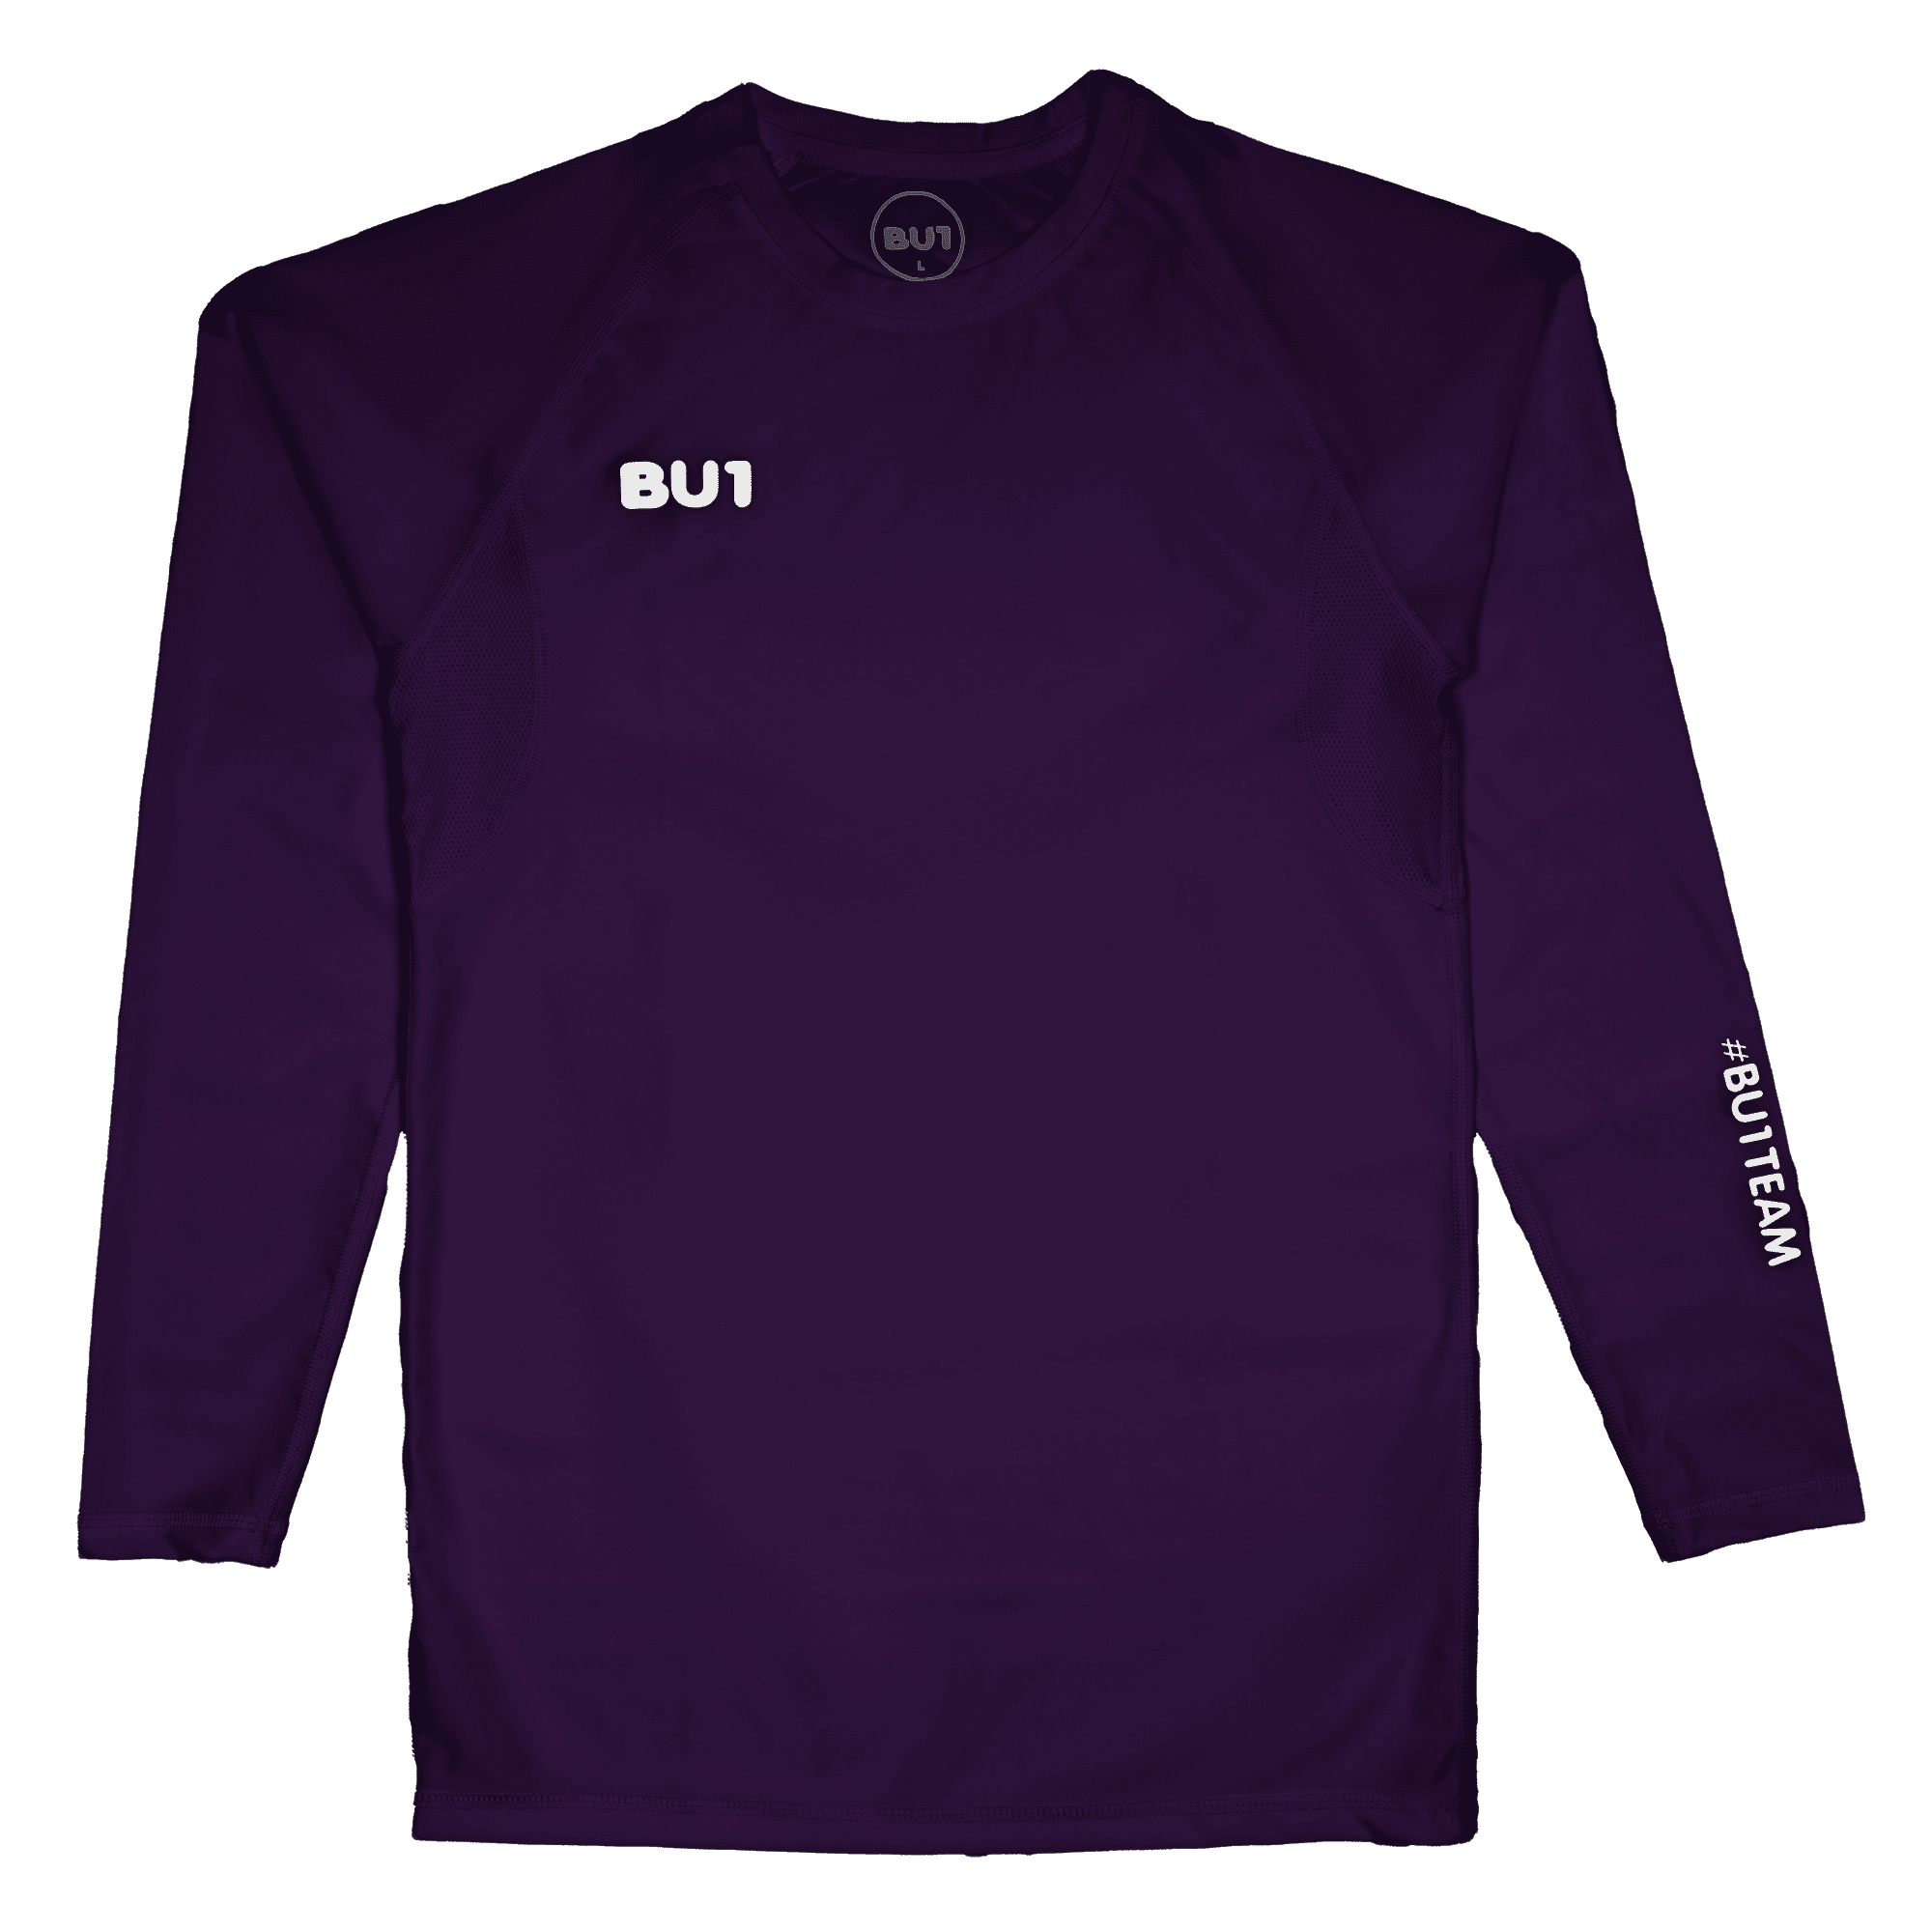 BU1 kompresní tričko fialové